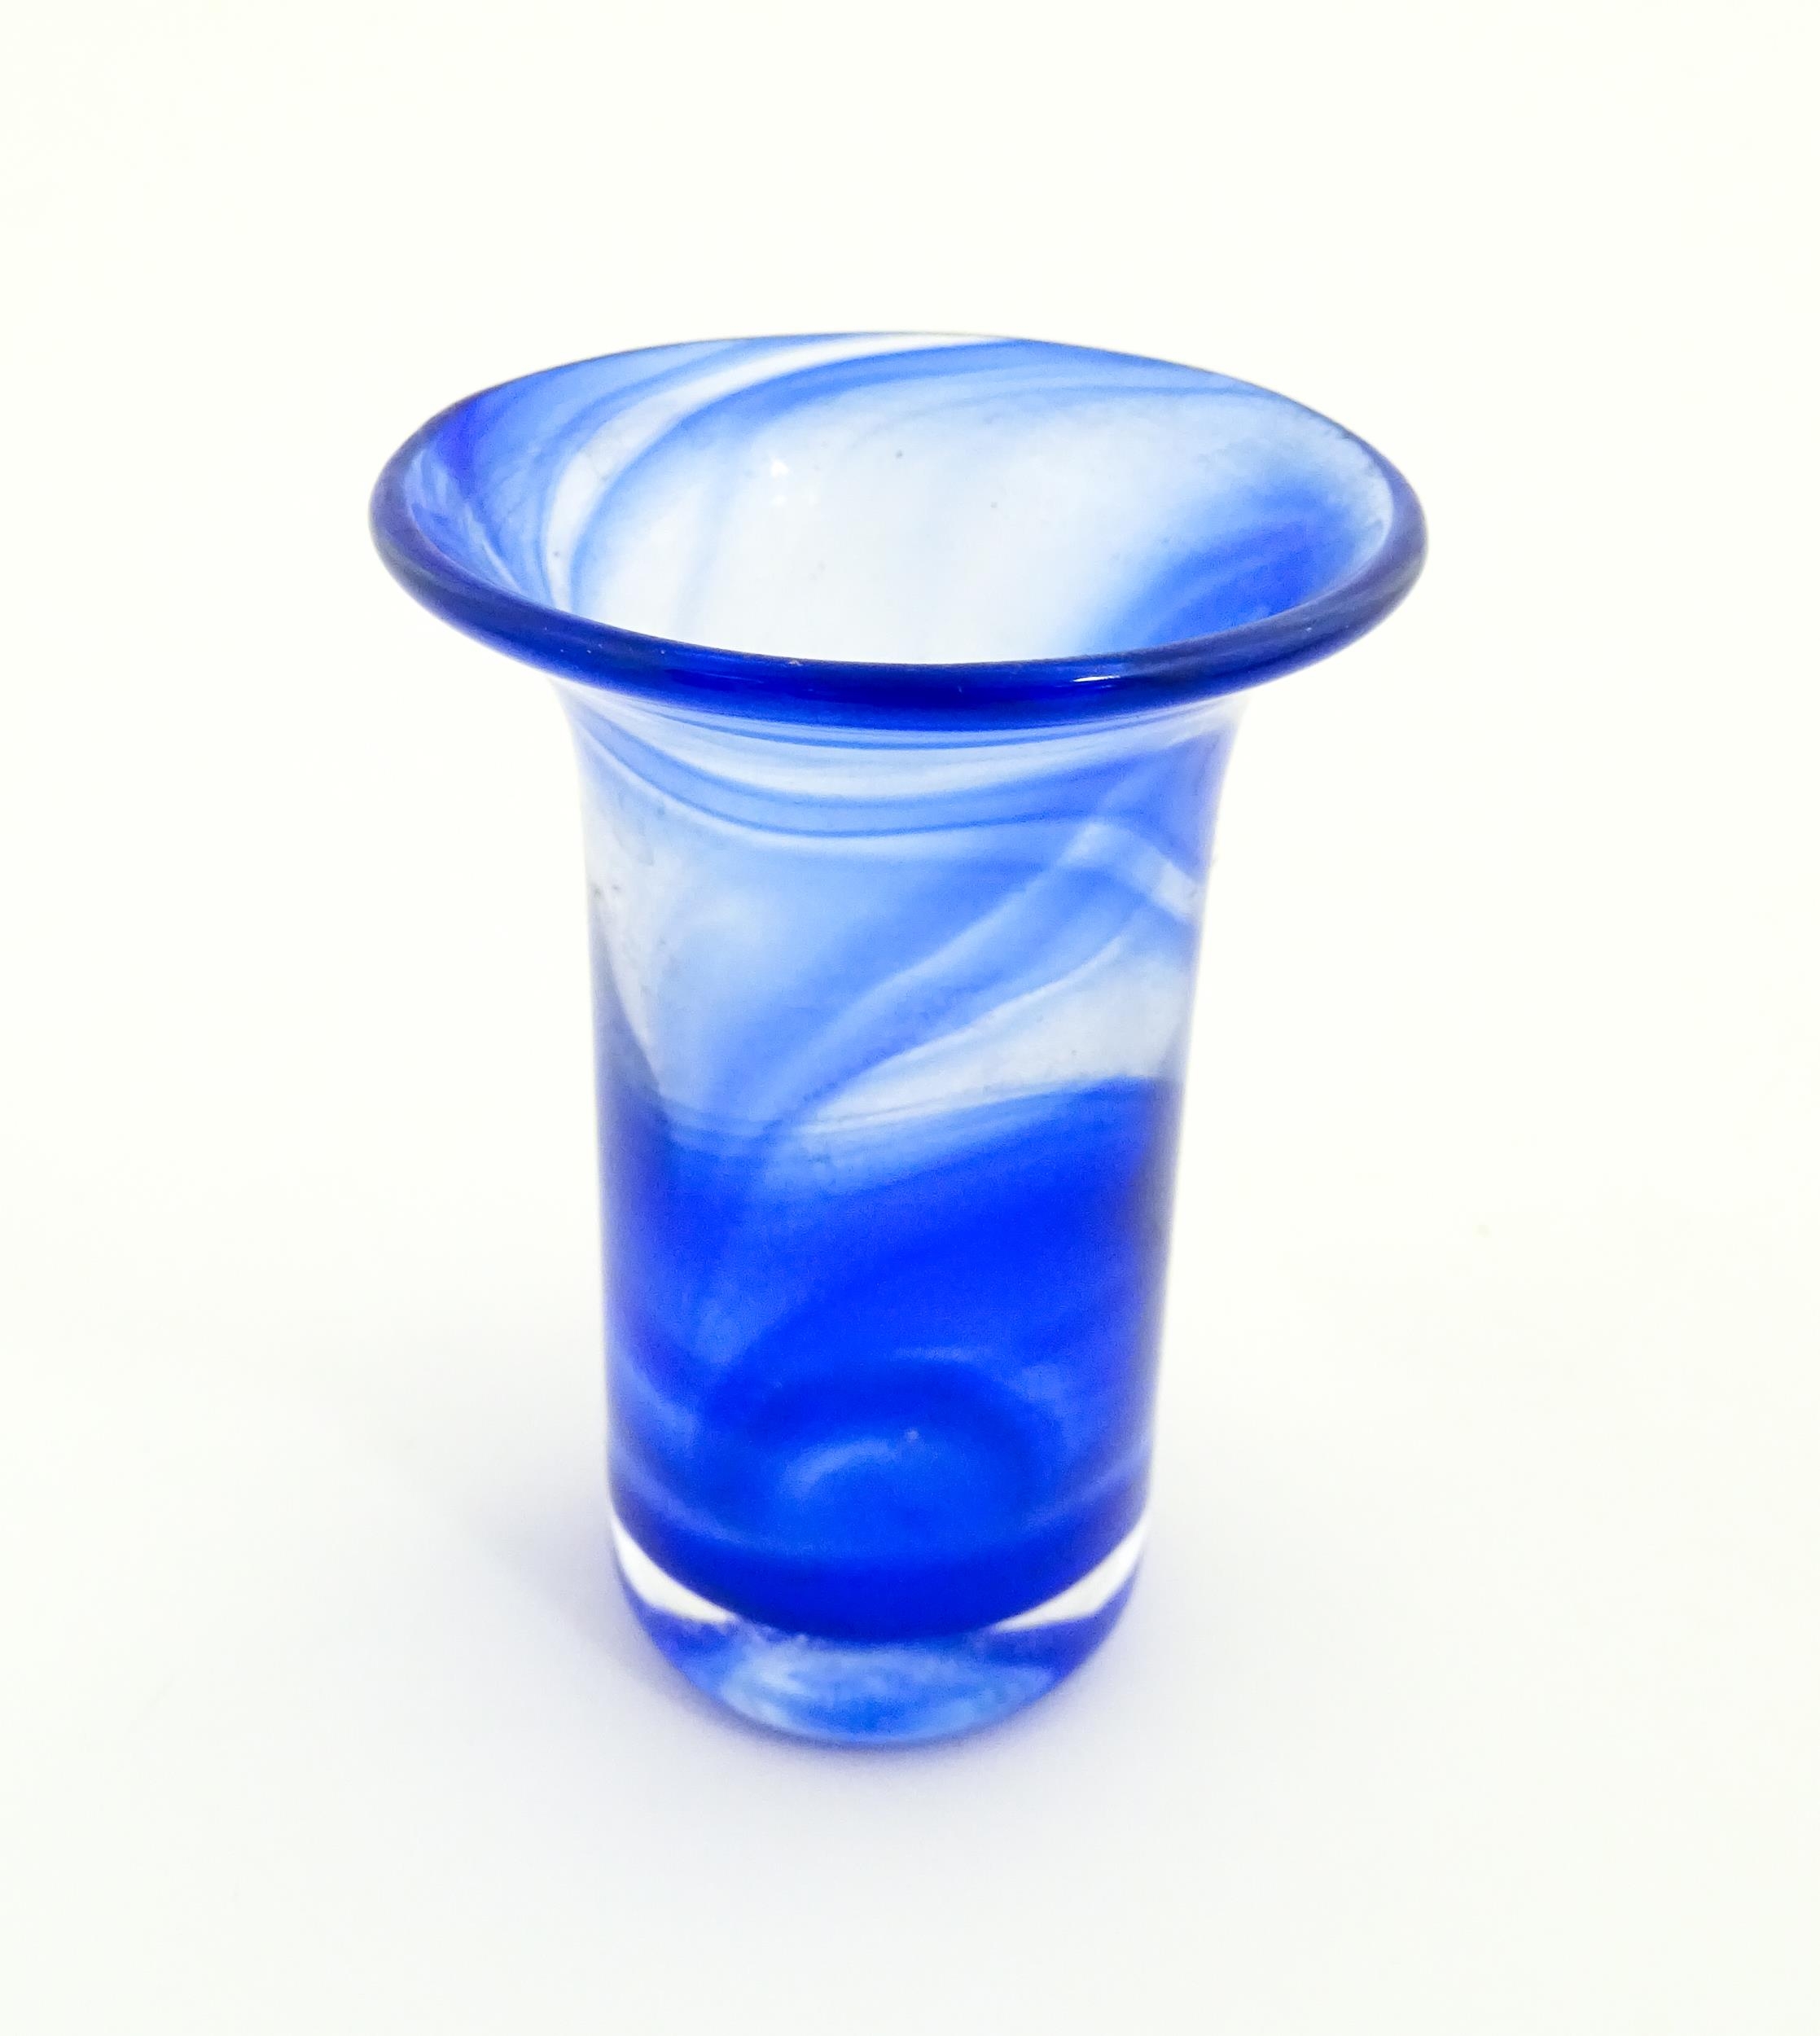 A Swedish Vas Vitreum blue glass vase with flared rim, signed under Vas Vitreum Sweden. Approx. 4 - Image 5 of 6